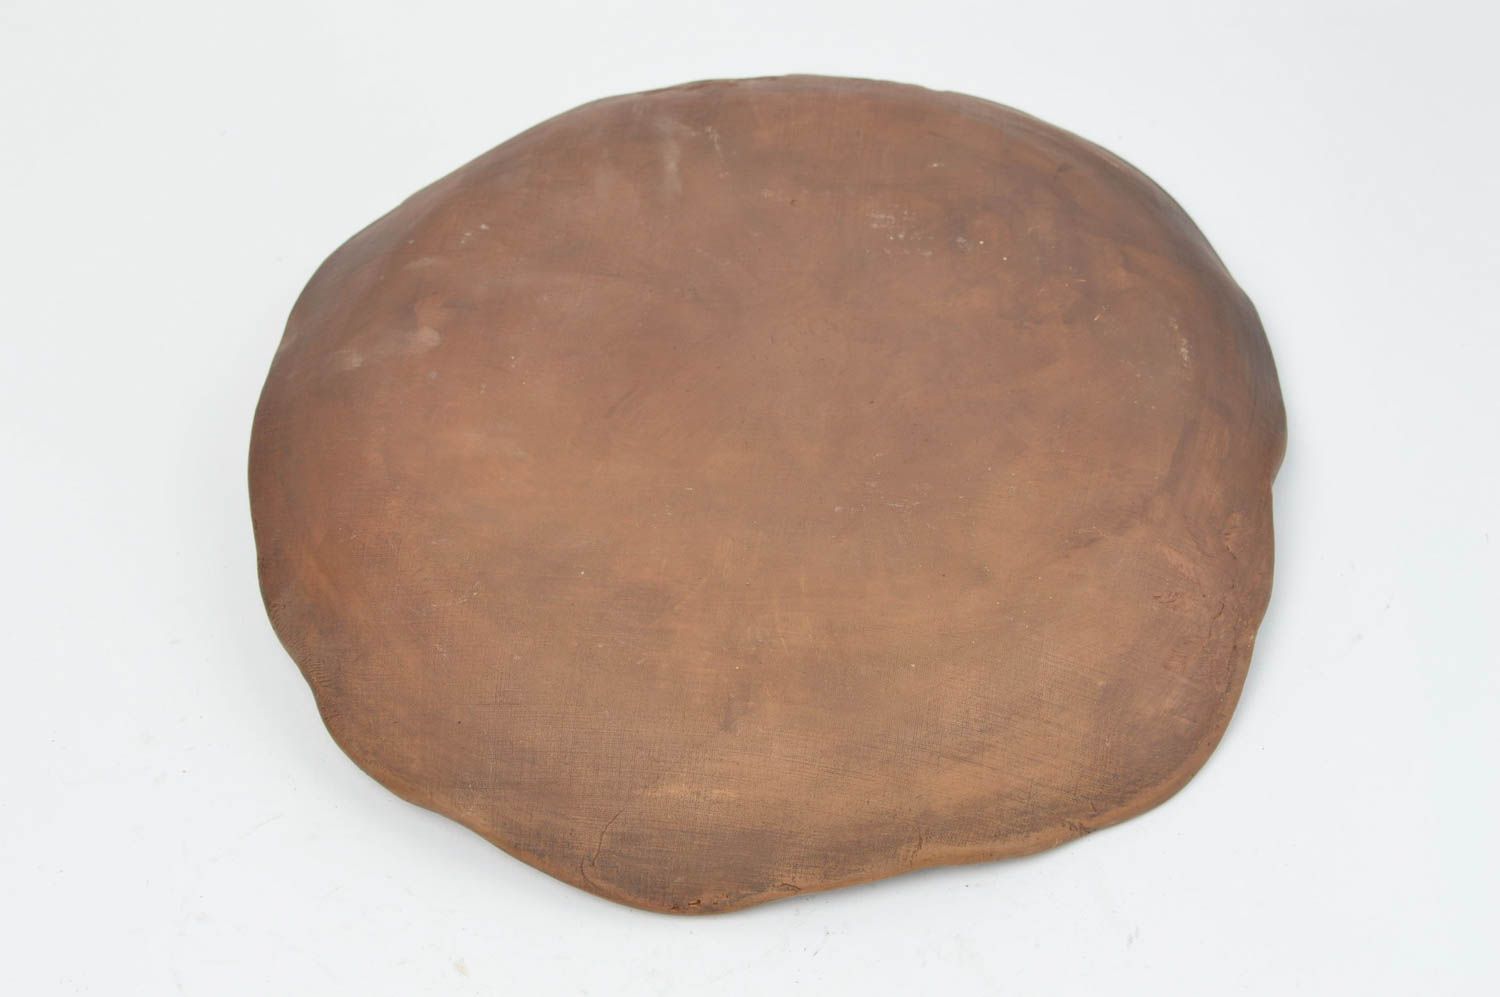 Assiette plate en terre cuite marron clair avec motif en relief ronde faite main photo 4